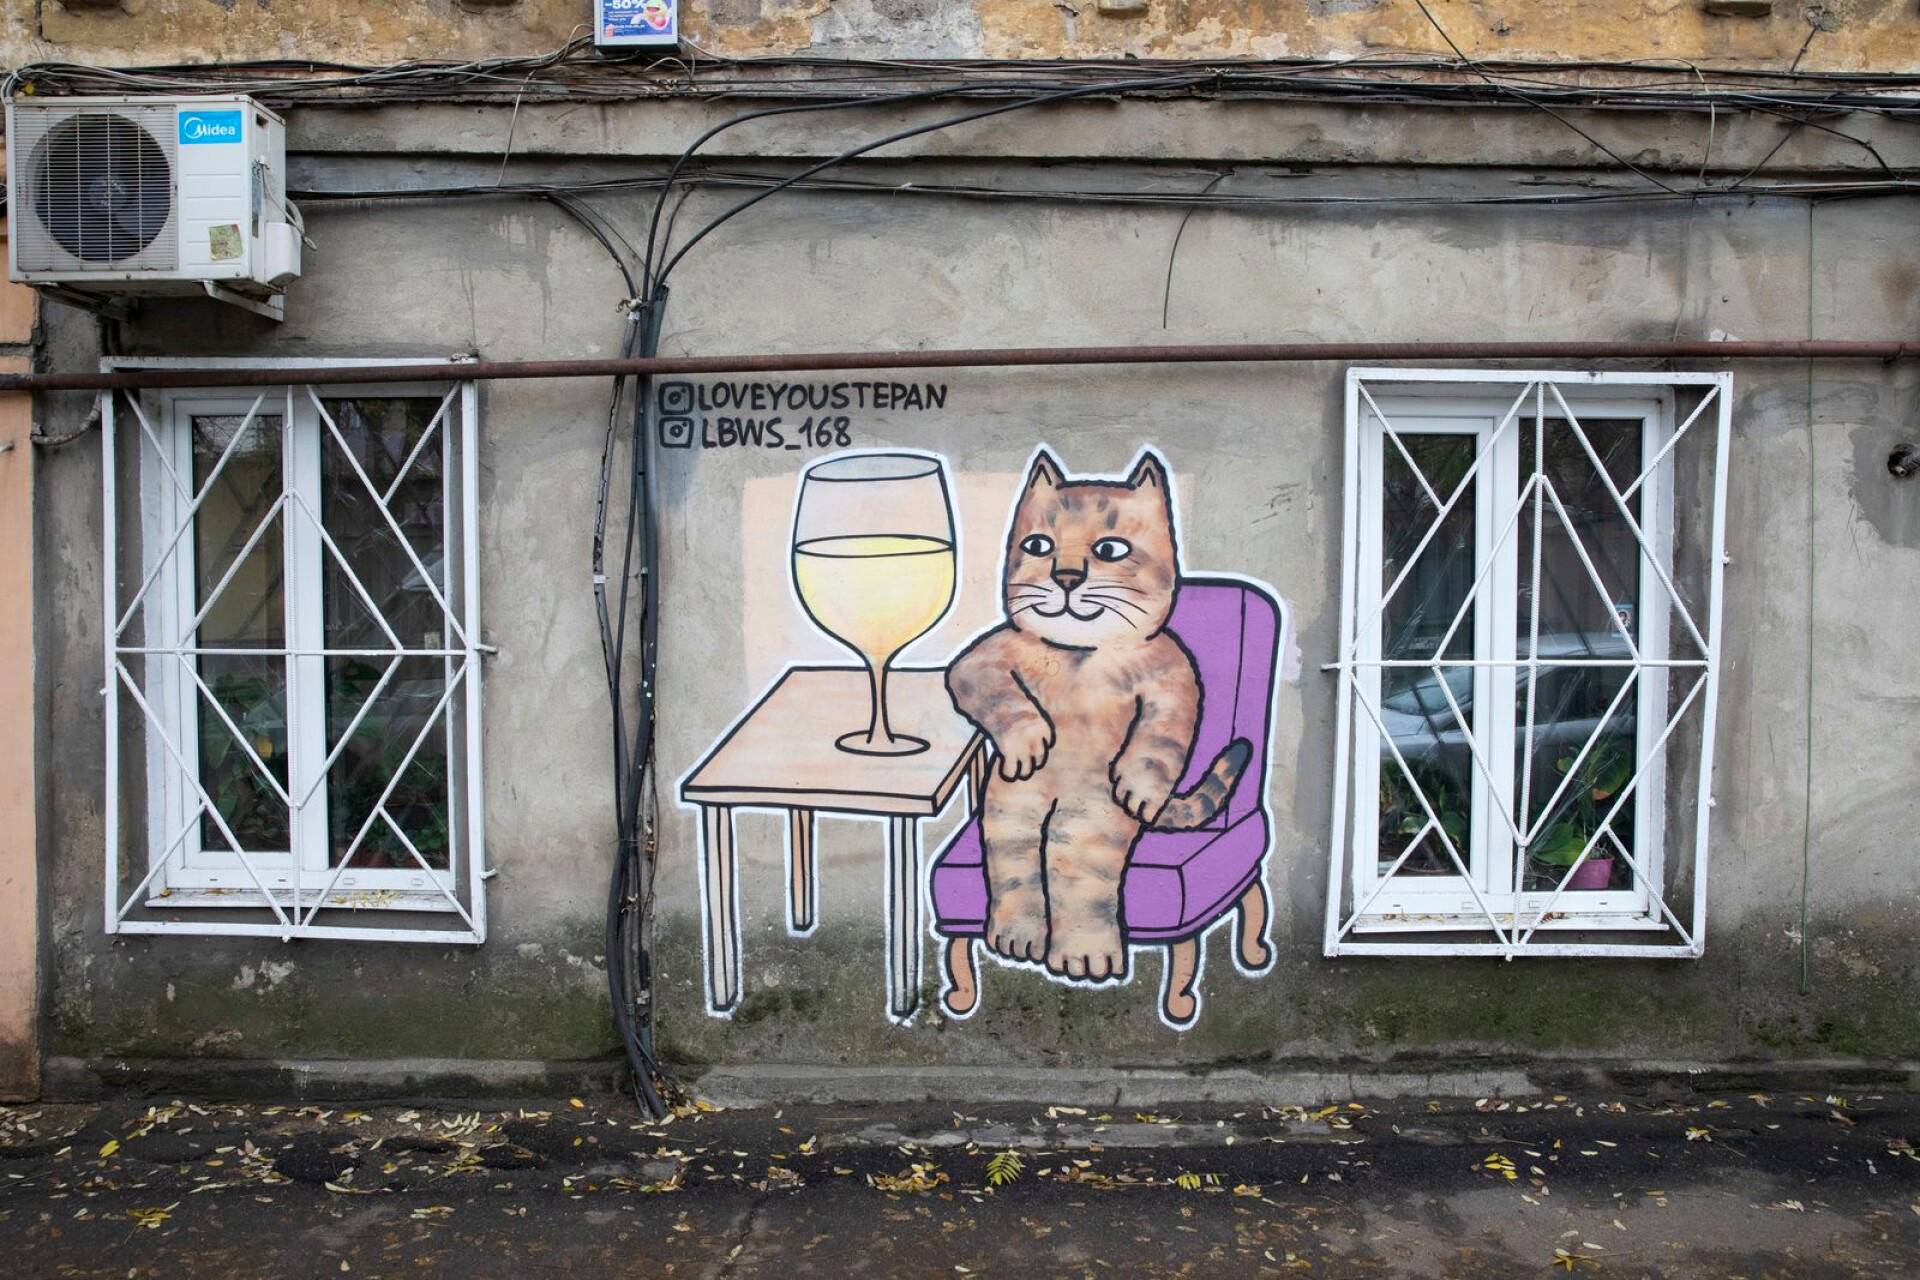 Varhaisemman vaiheen kissamaalaus Odessassa esittää sosiaalisessa mediassa julkkikseksi jo ennen sotaa noussutta ukrainalaista Stepan-kissaa.